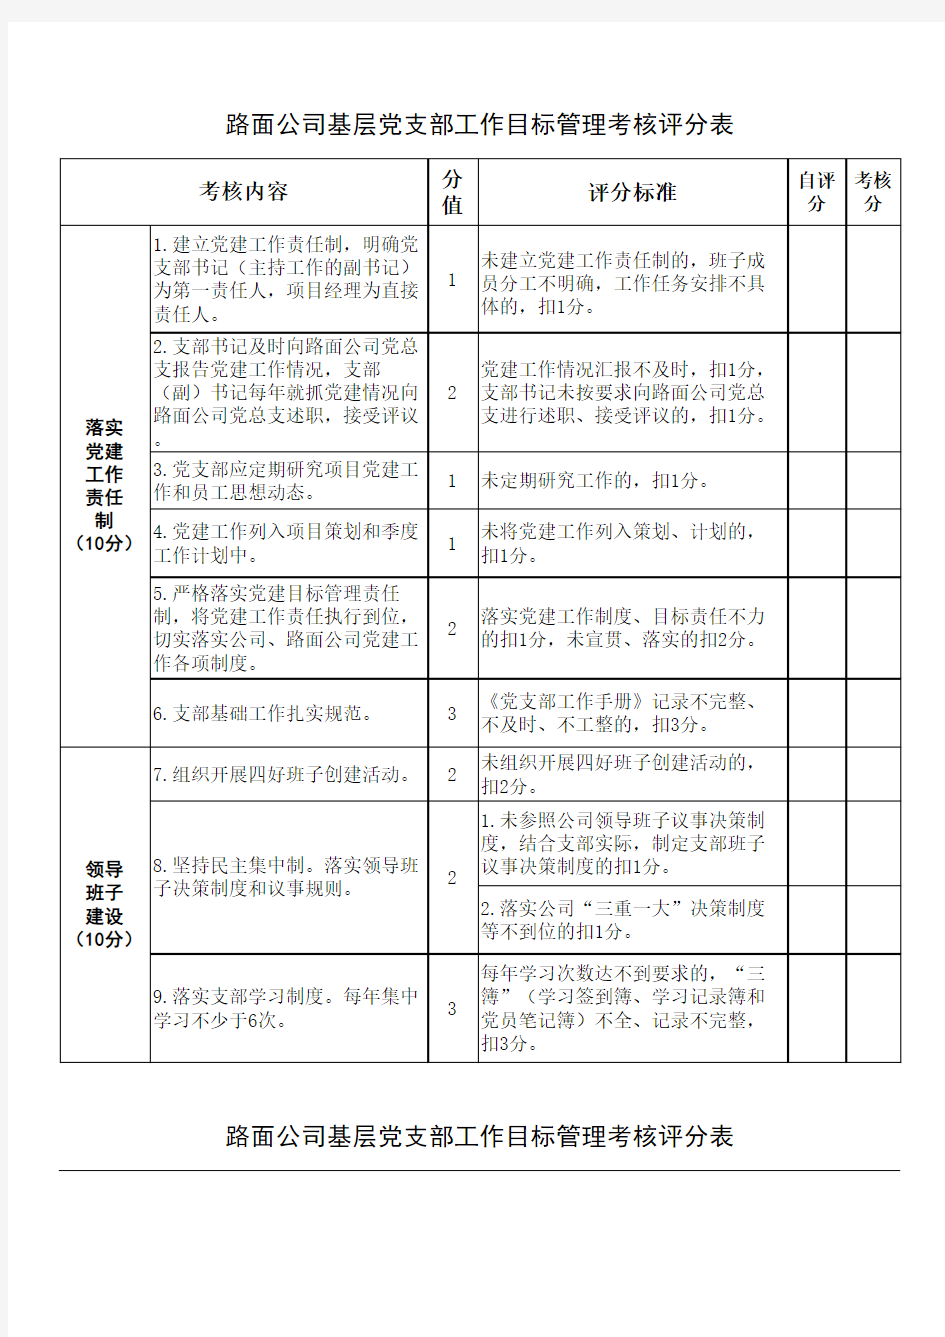 基层党支部工作目标管理考核评分表(2017年)